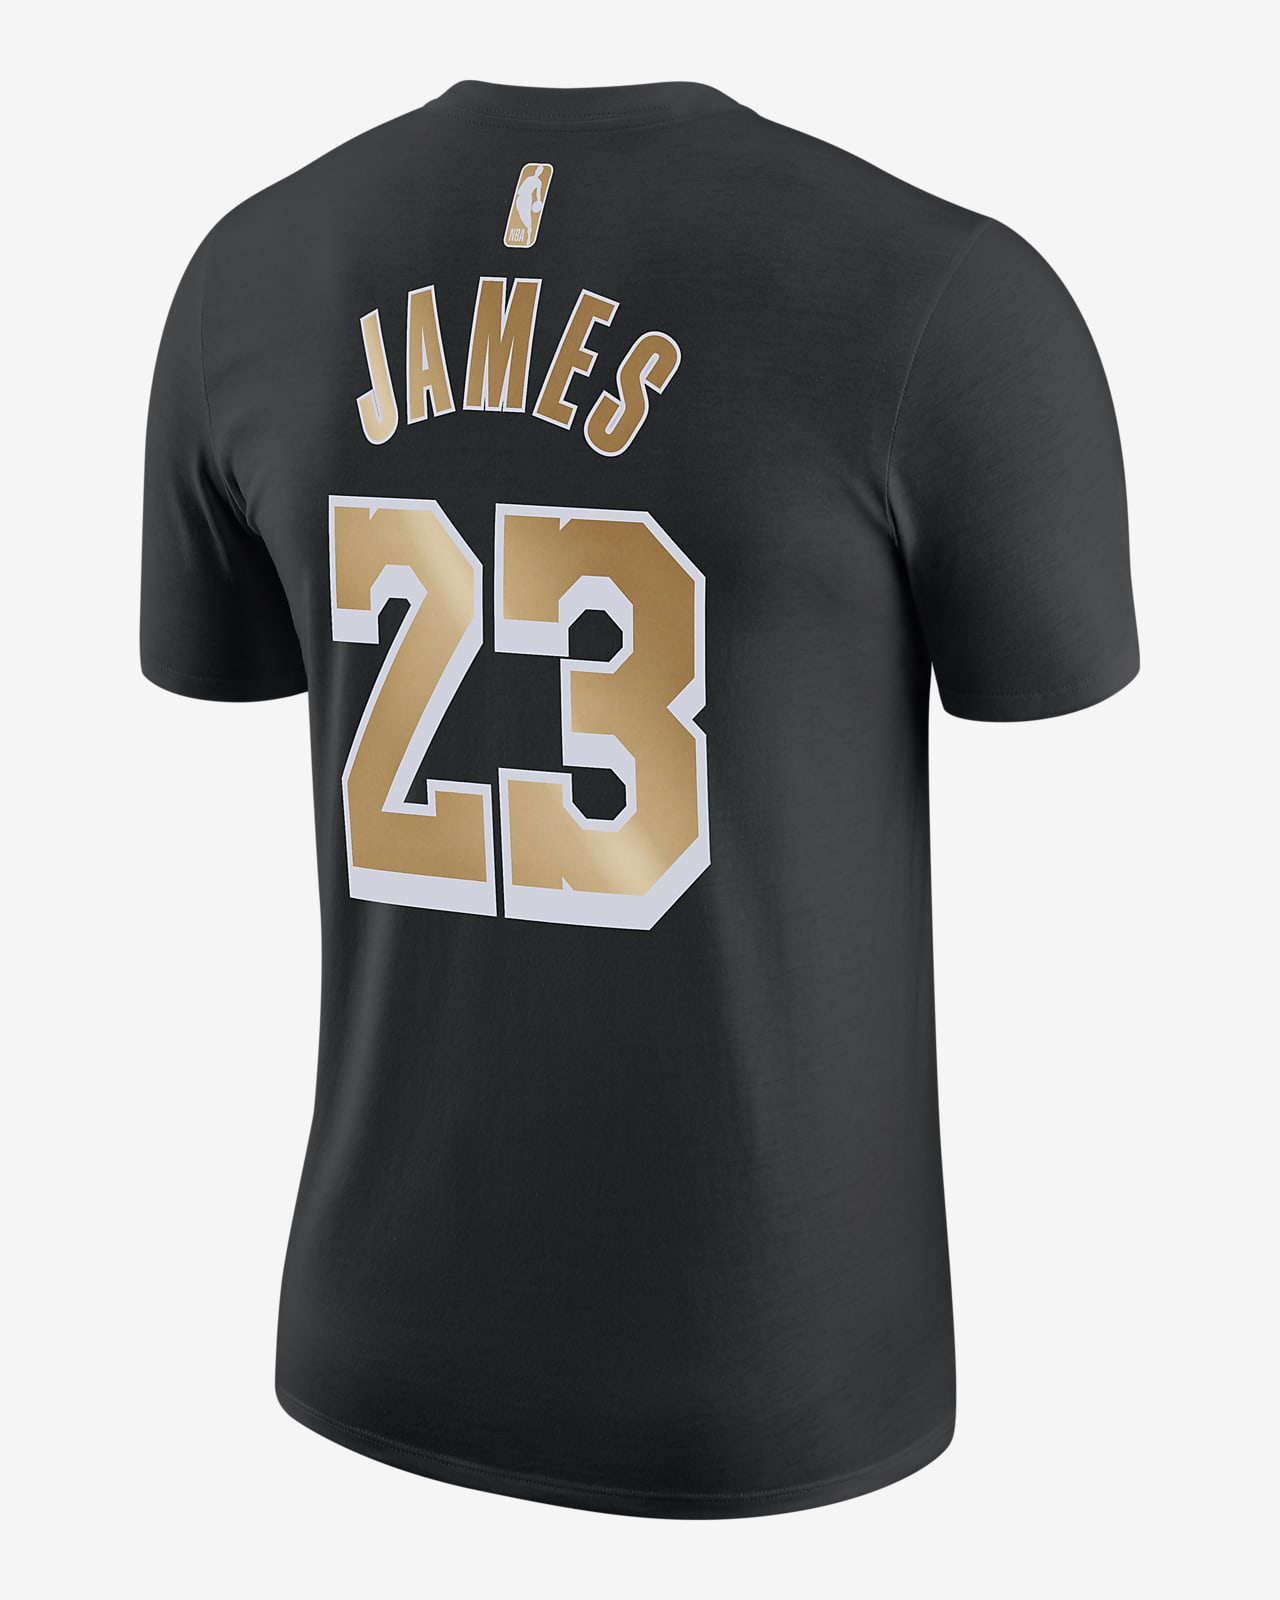 レブロン ジェームズ セレクト シリーズ メンズ ナイキ NBA Tシャツ